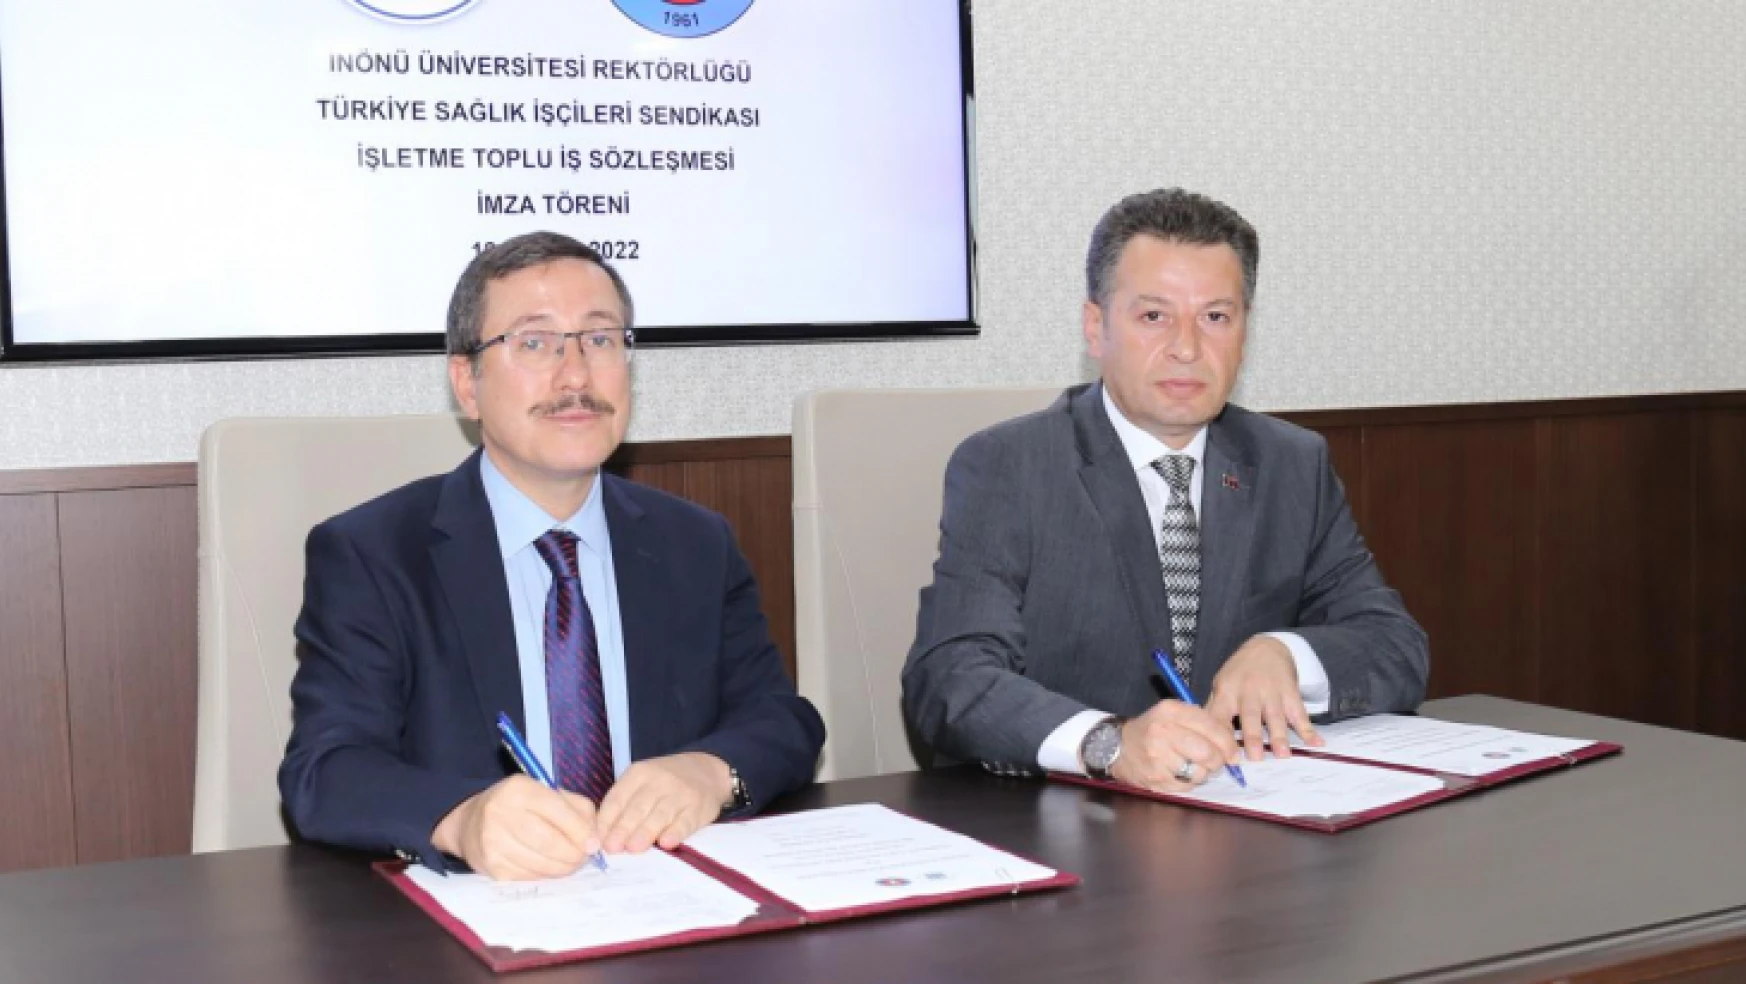 İnönü Üniversitesi ile Türkiye Sağlık İşçileri Sendikası Arasında İşletme Toplu İş Sözleşmesi İmzalandı